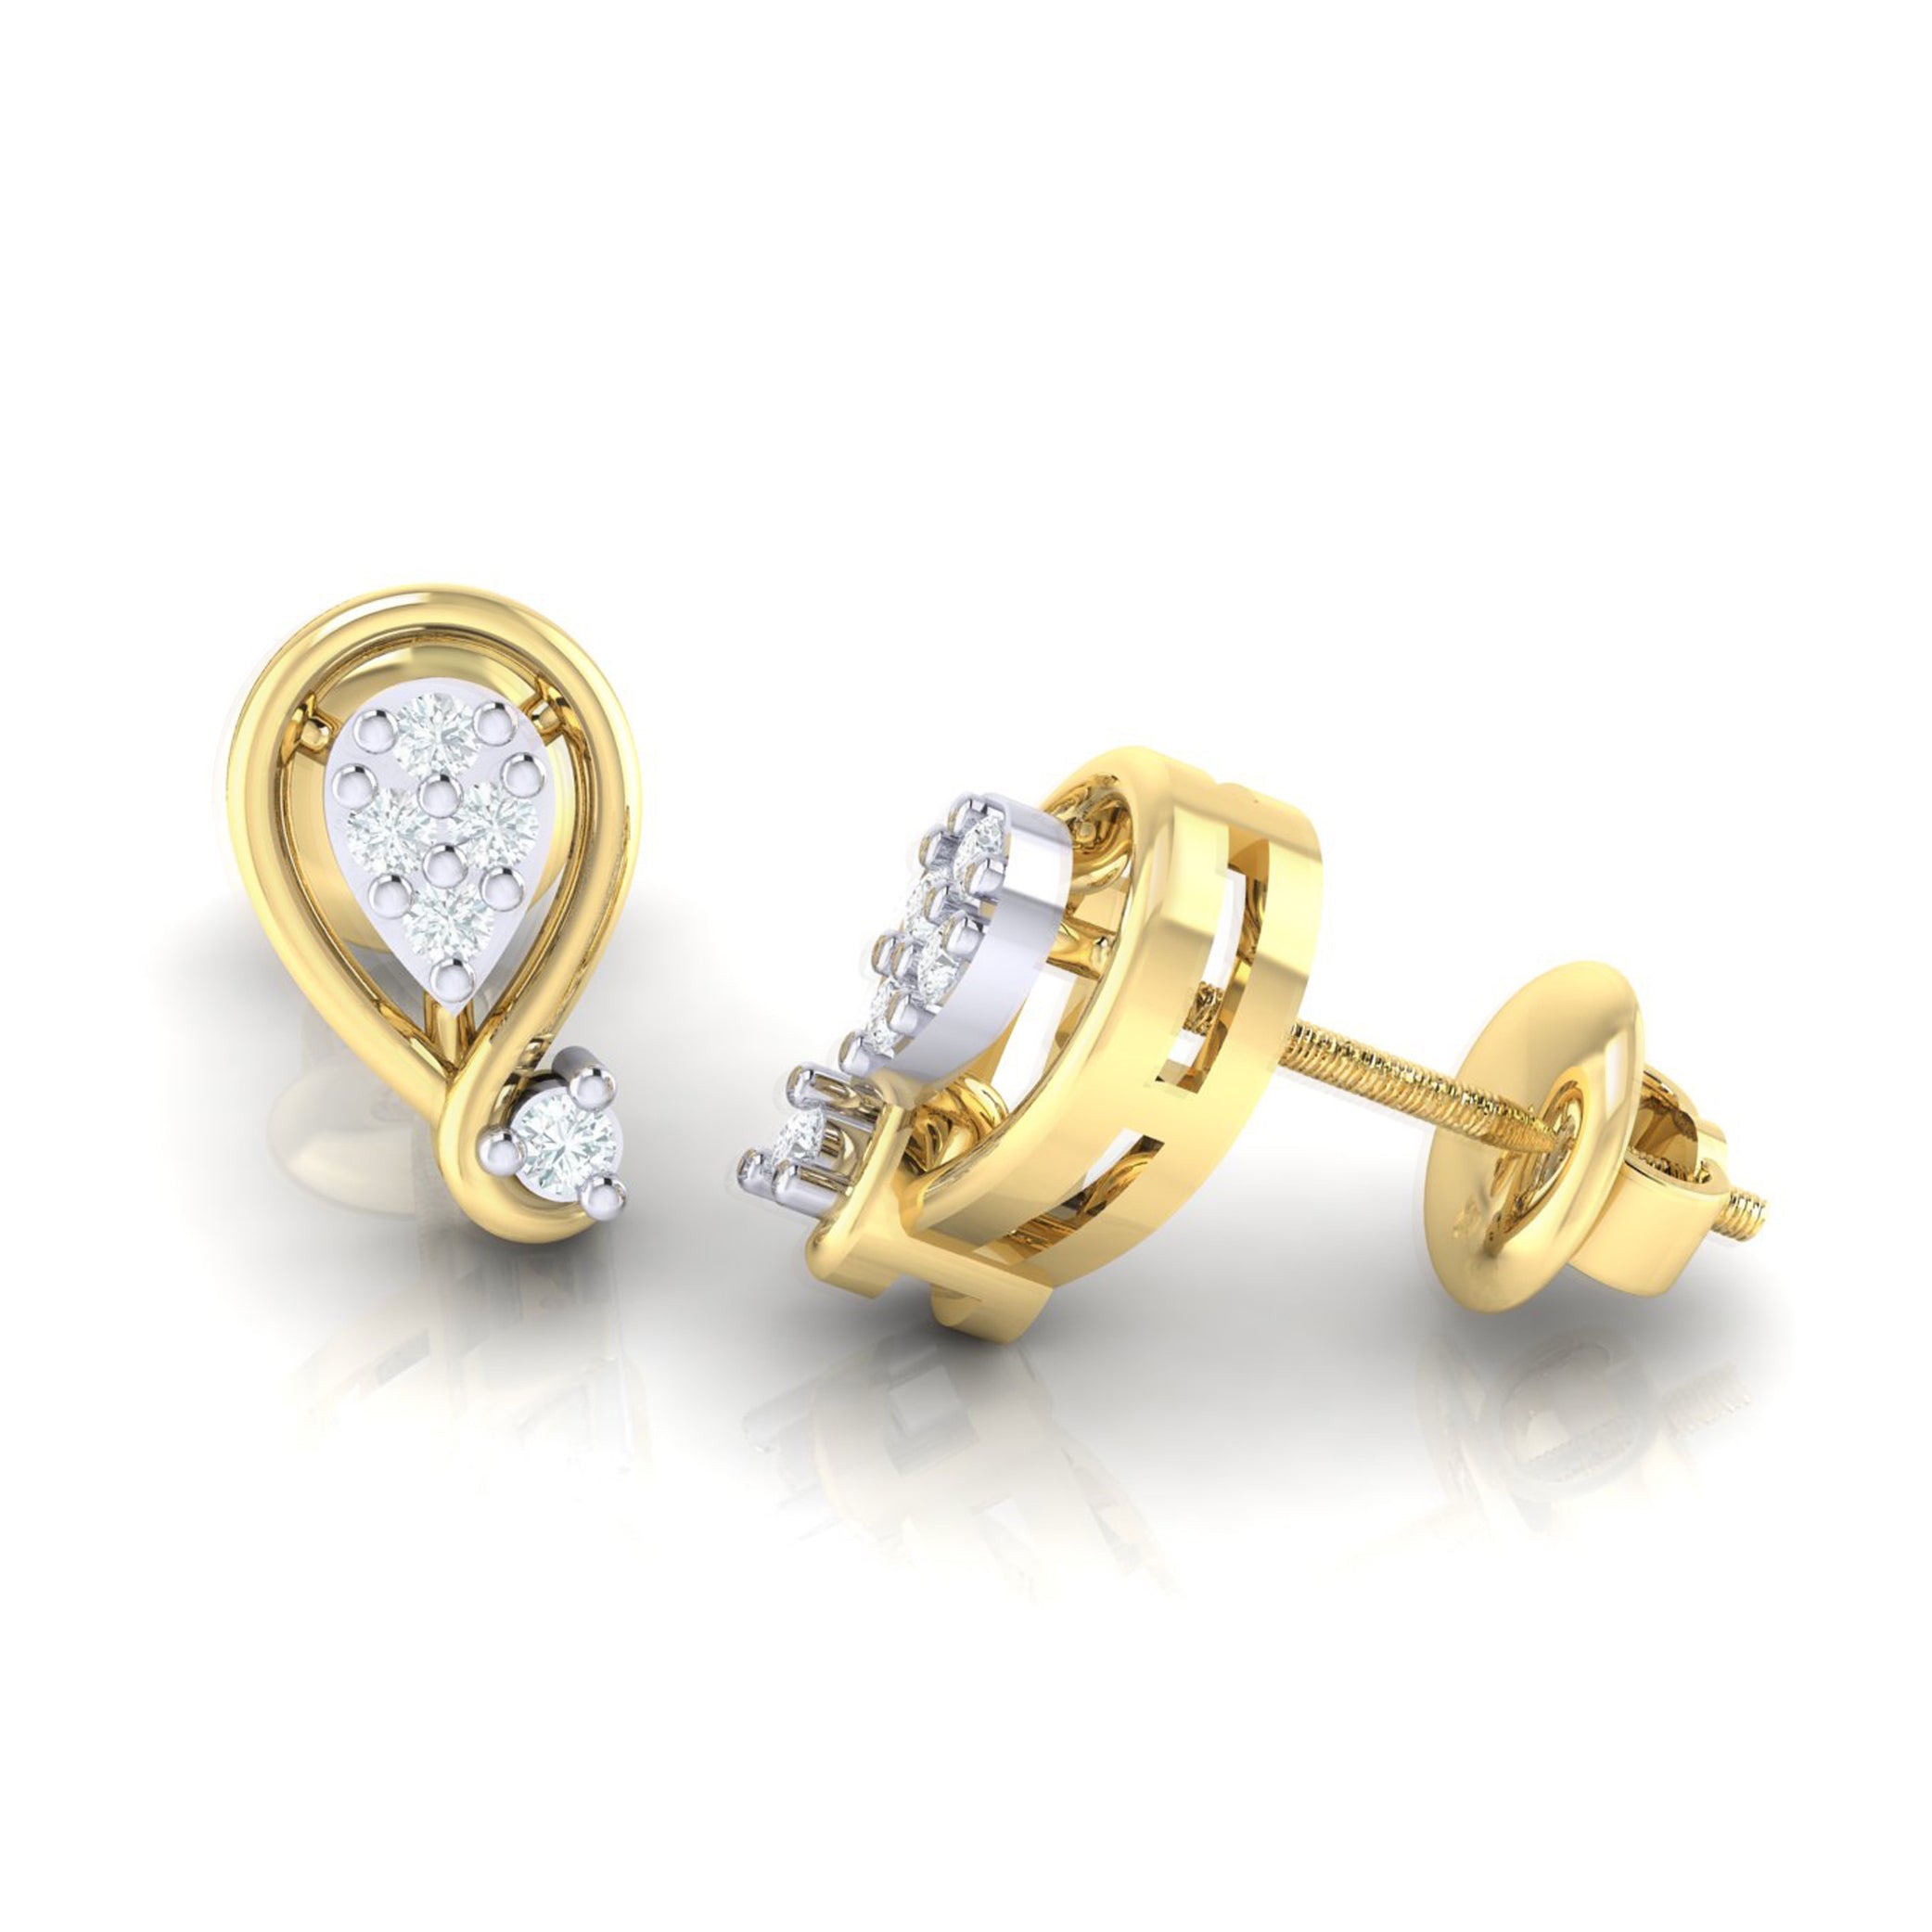 Buy gold earrings under 10000  Latest design 22k gold earring